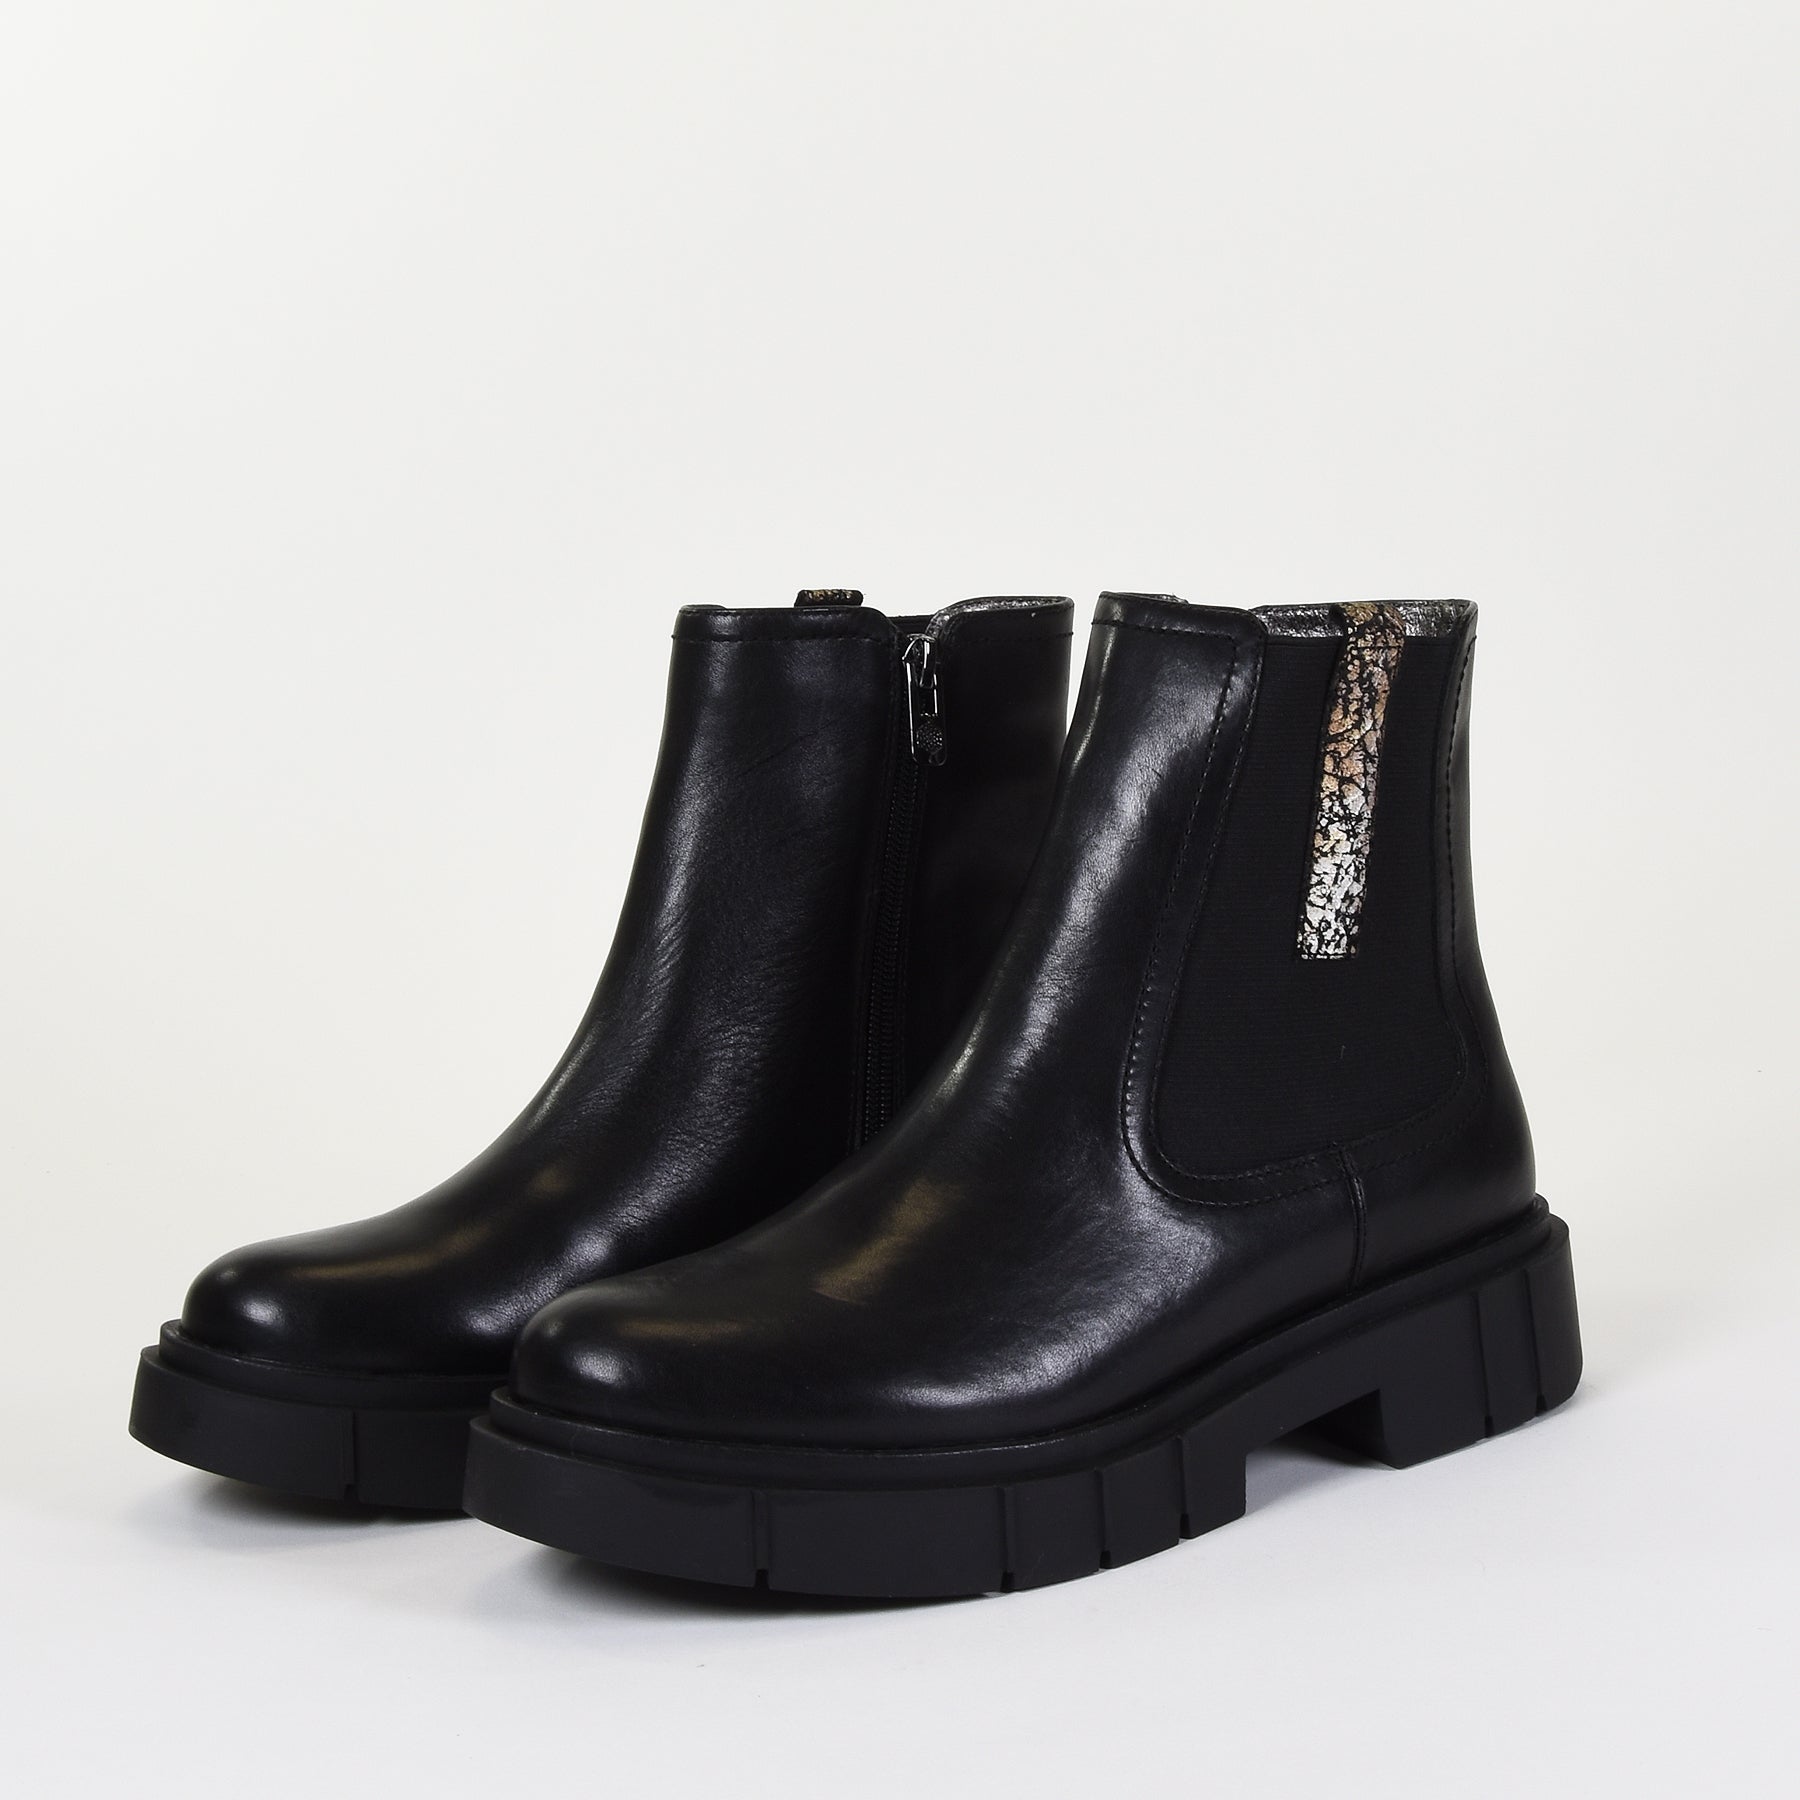 boots-emilie-karston-adele-noir-mocassi-niort_bdae50bf-2be4-4b41-953d-803613148498.png